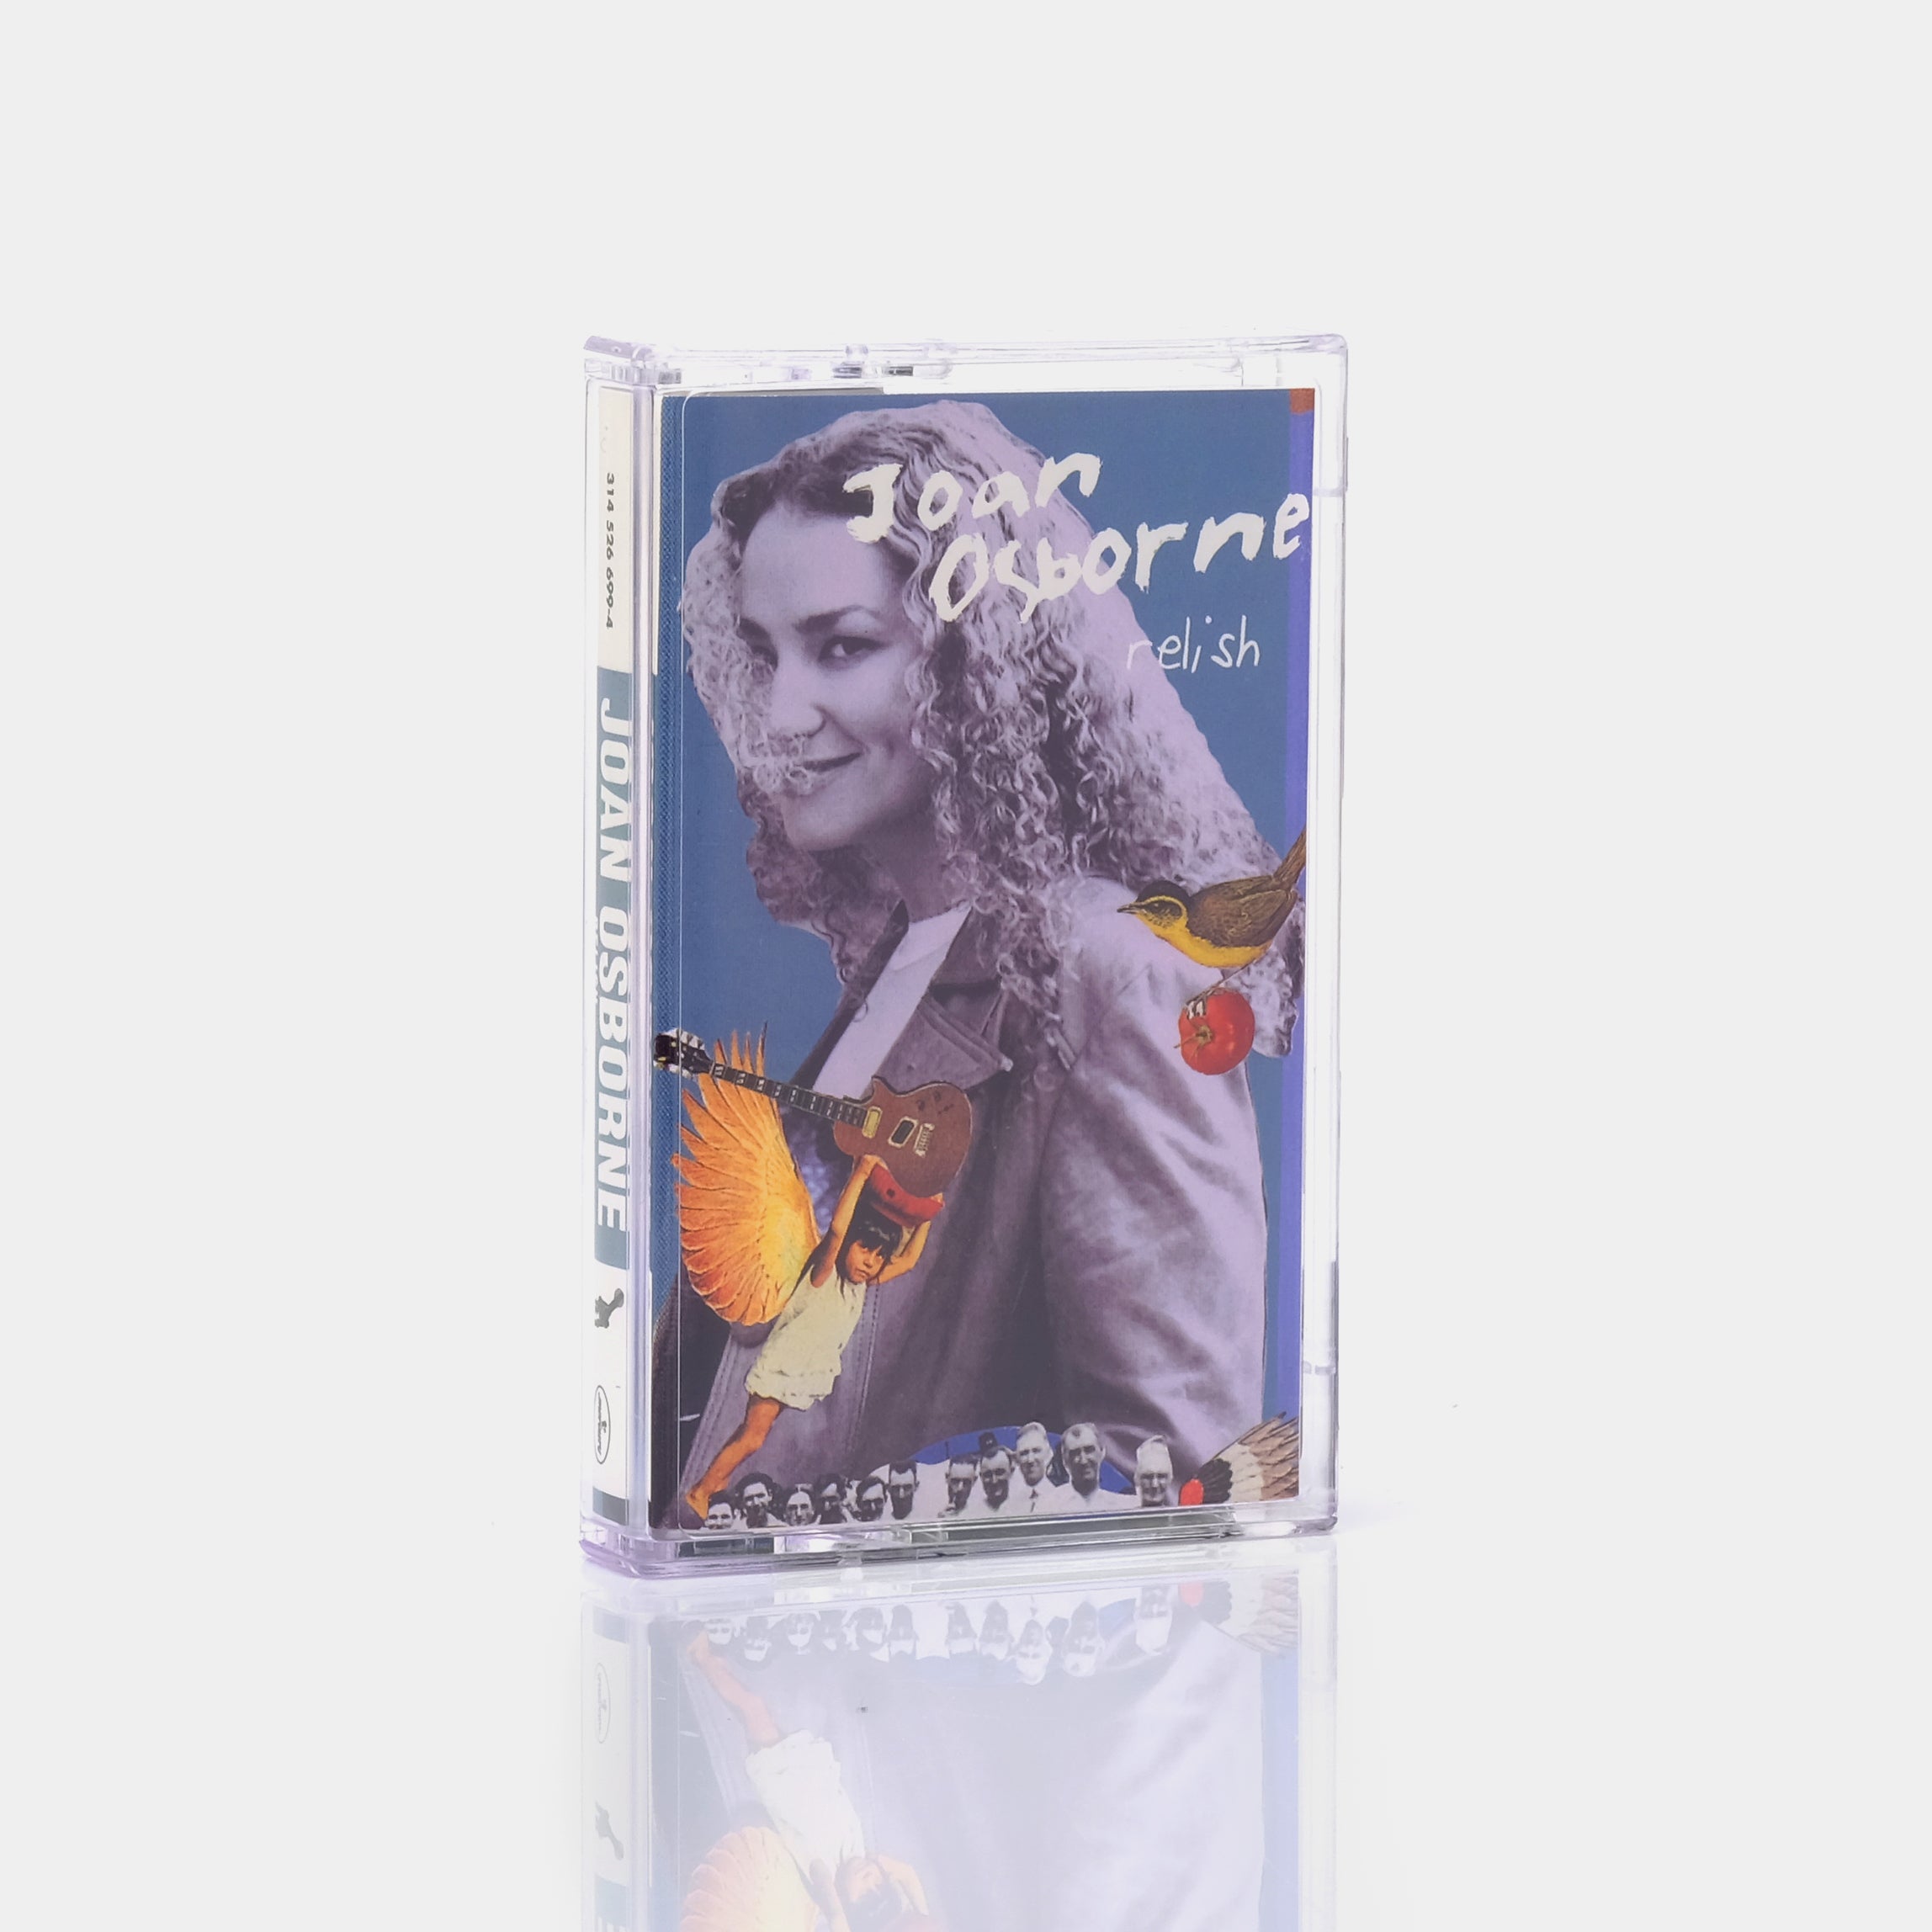 Joan Osborne - Relish Cassette Tape